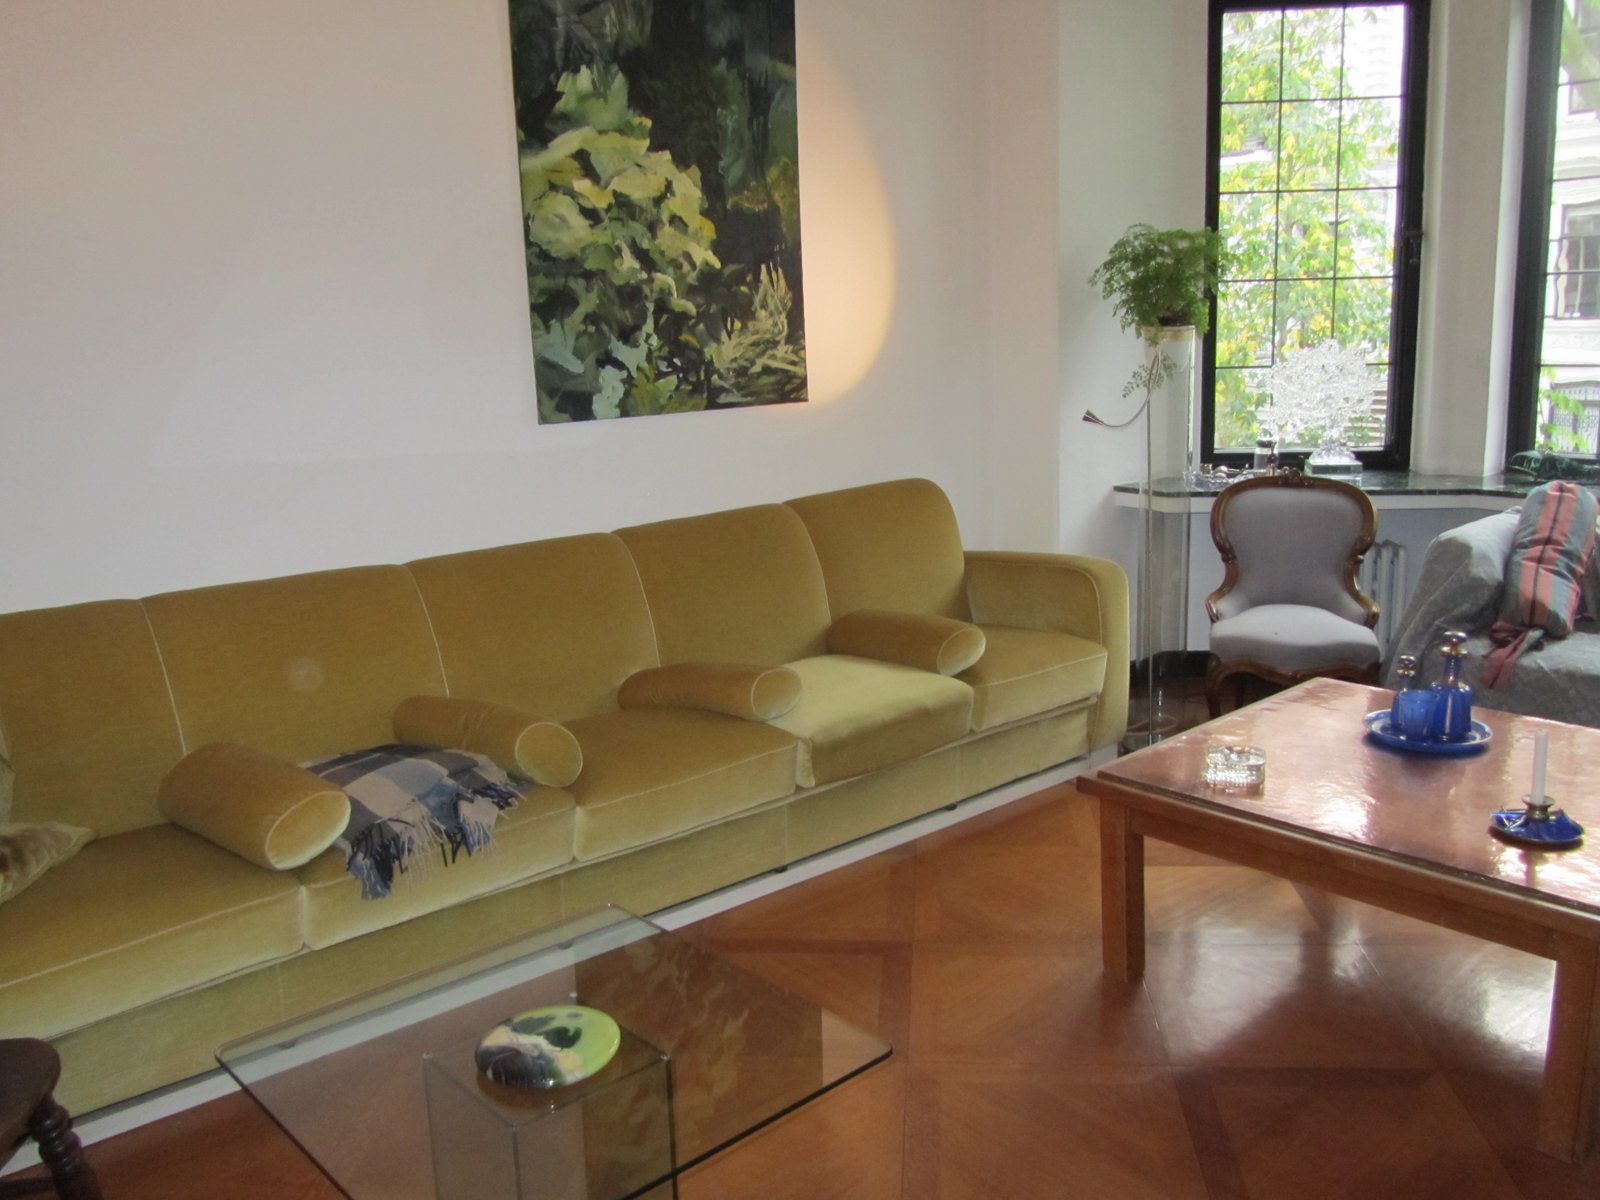 Noch eine Erinnerung an Horn: das große Sofa hat auch einen Platz bei der Tochter gefunden. Bildvorlage: Monica Borgward